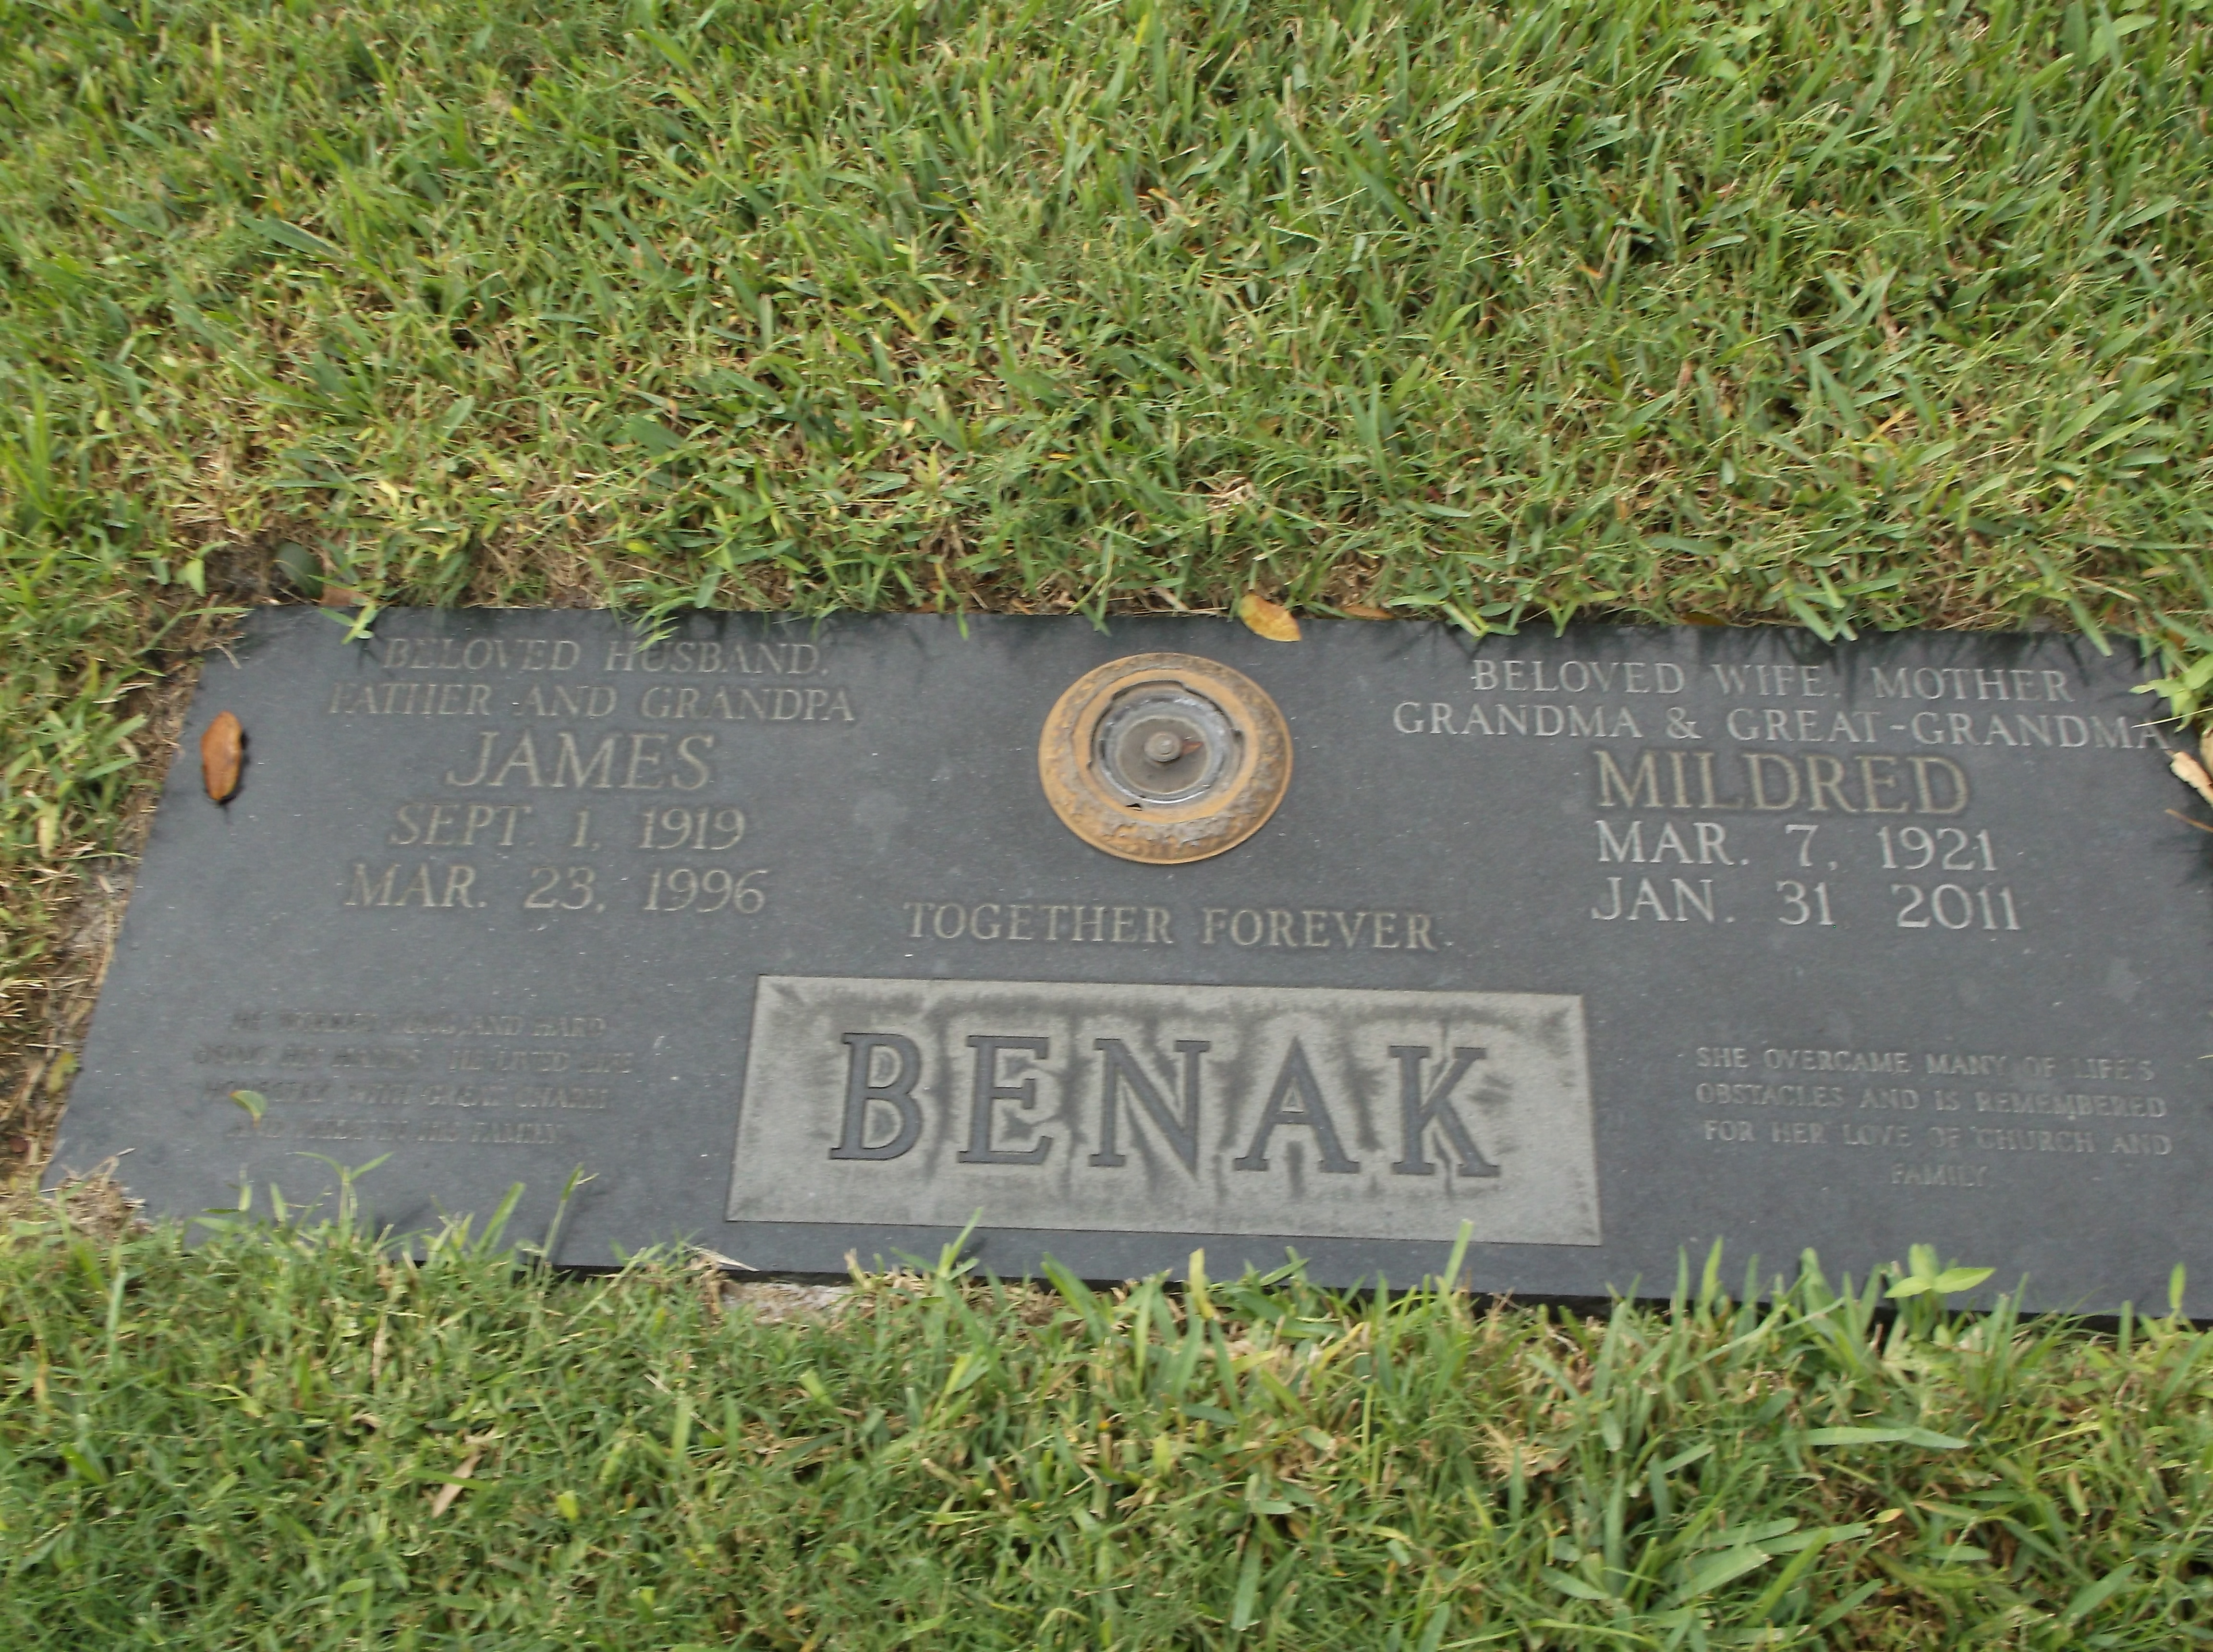 James Benak